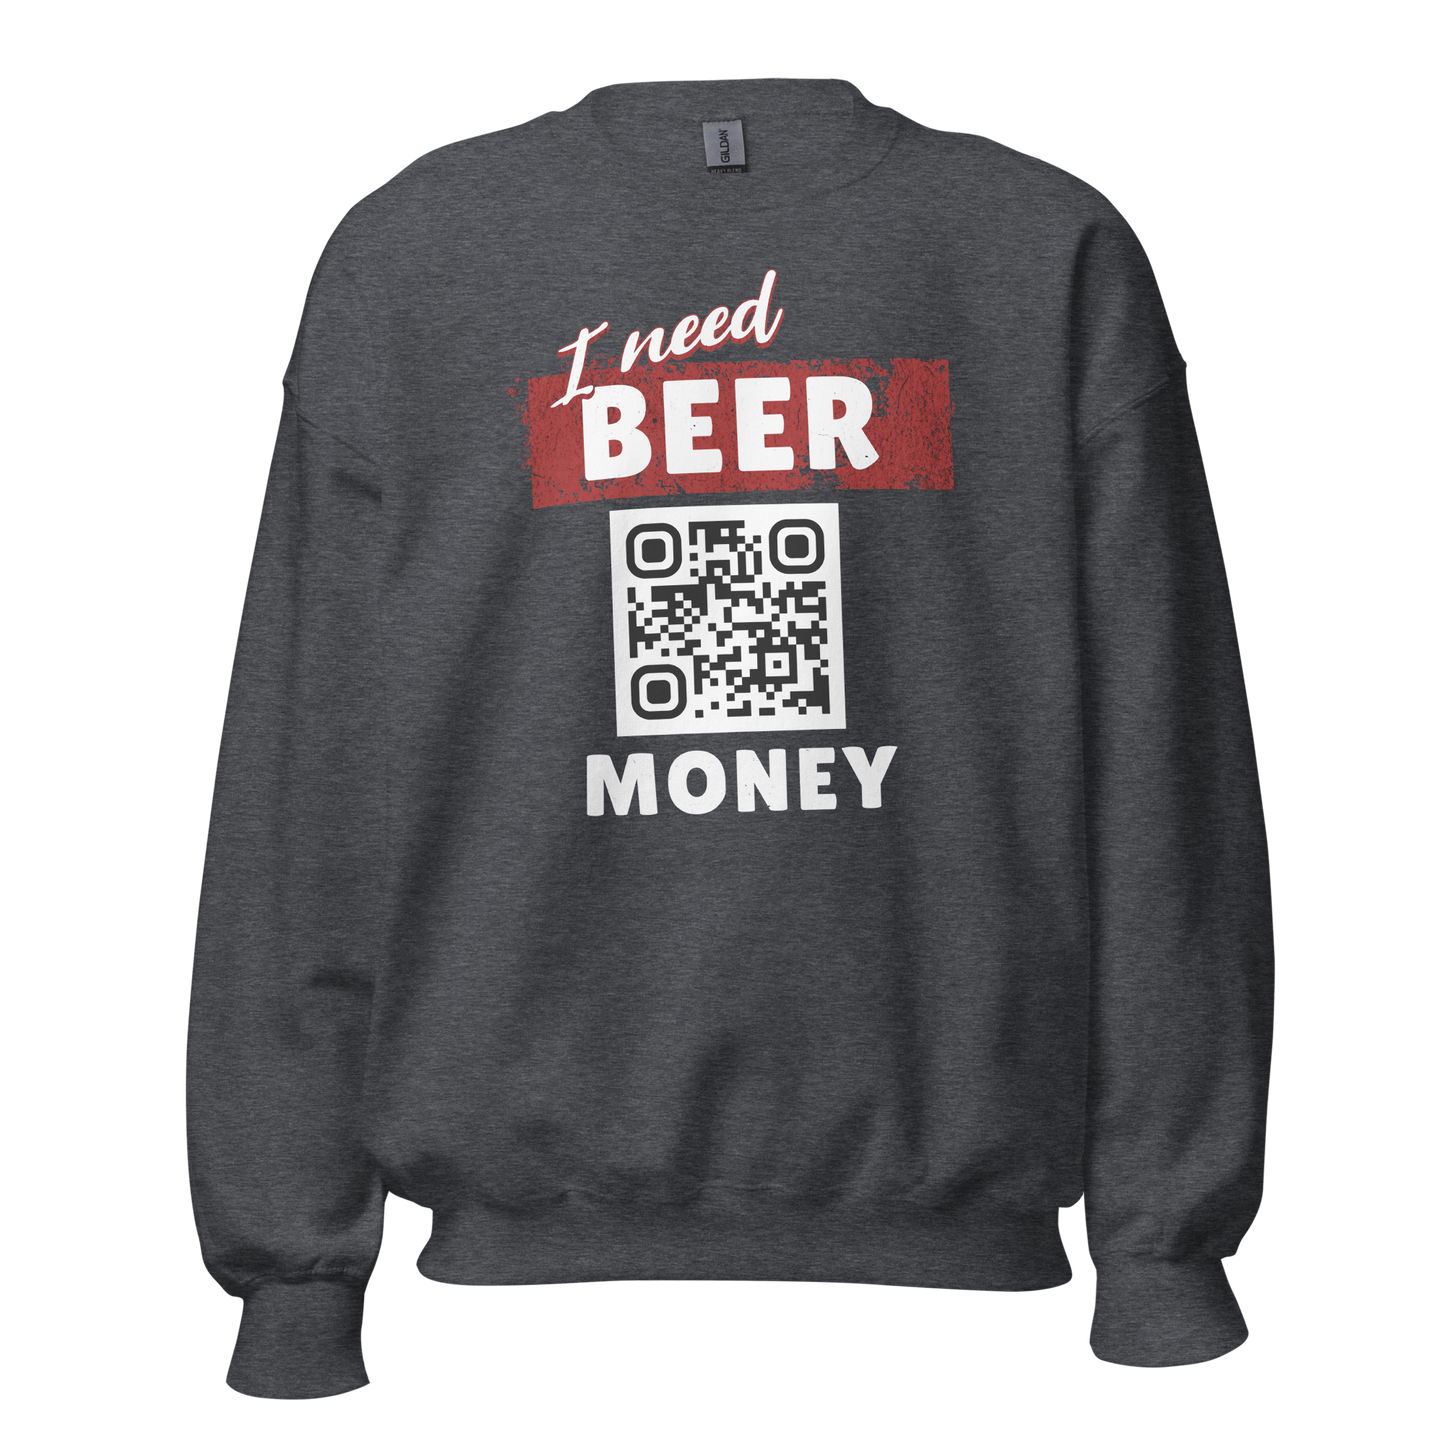 I Need Beer Money Unisex Sweatshirt - Personalizable